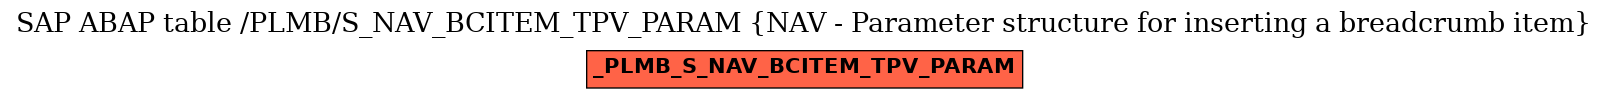 E-R Diagram for table /PLMB/S_NAV_BCITEM_TPV_PARAM (NAV - Parameter structure for inserting a breadcrumb item)